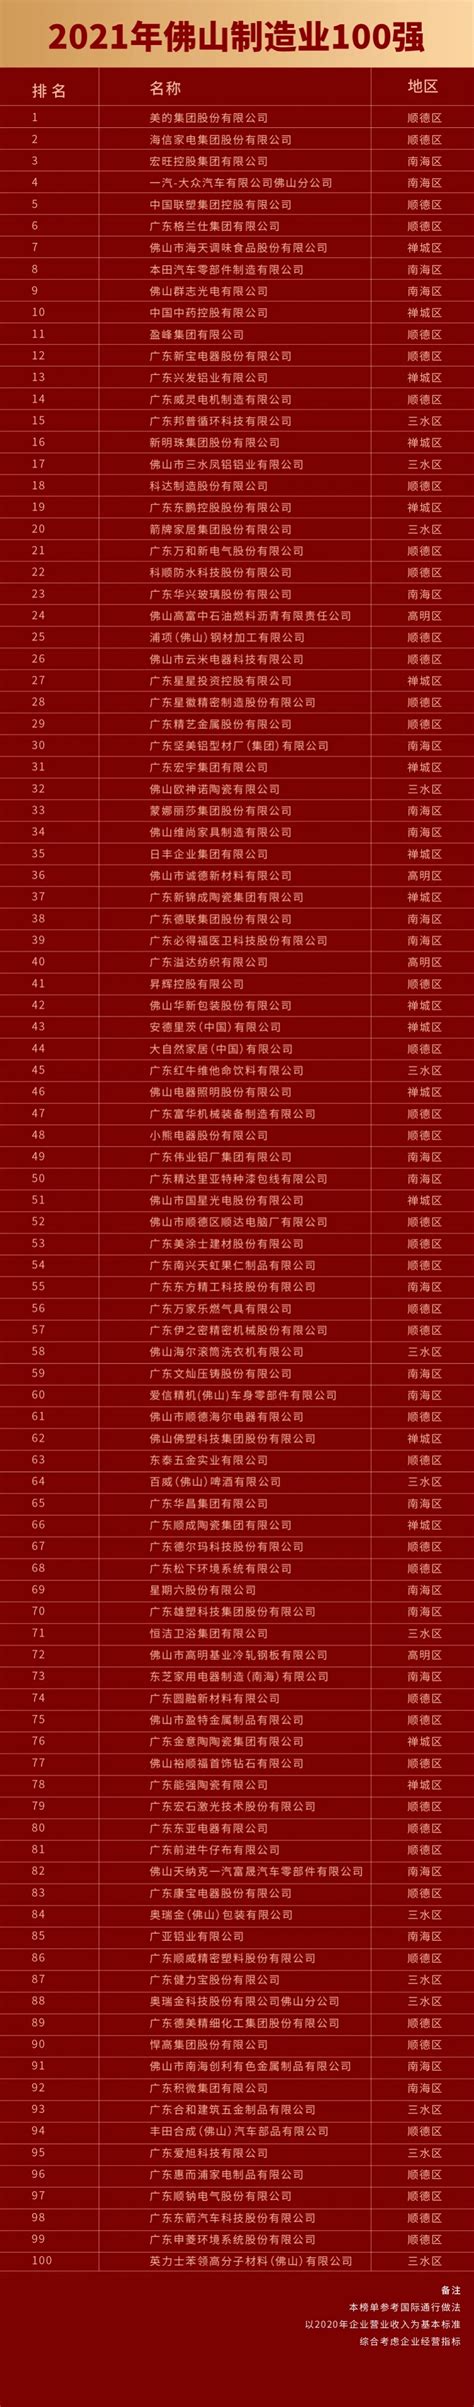 兴发铝业荣登“2020年佛山企业100强”榜单 - 大数据 - 广东省广新控股集团有限公司